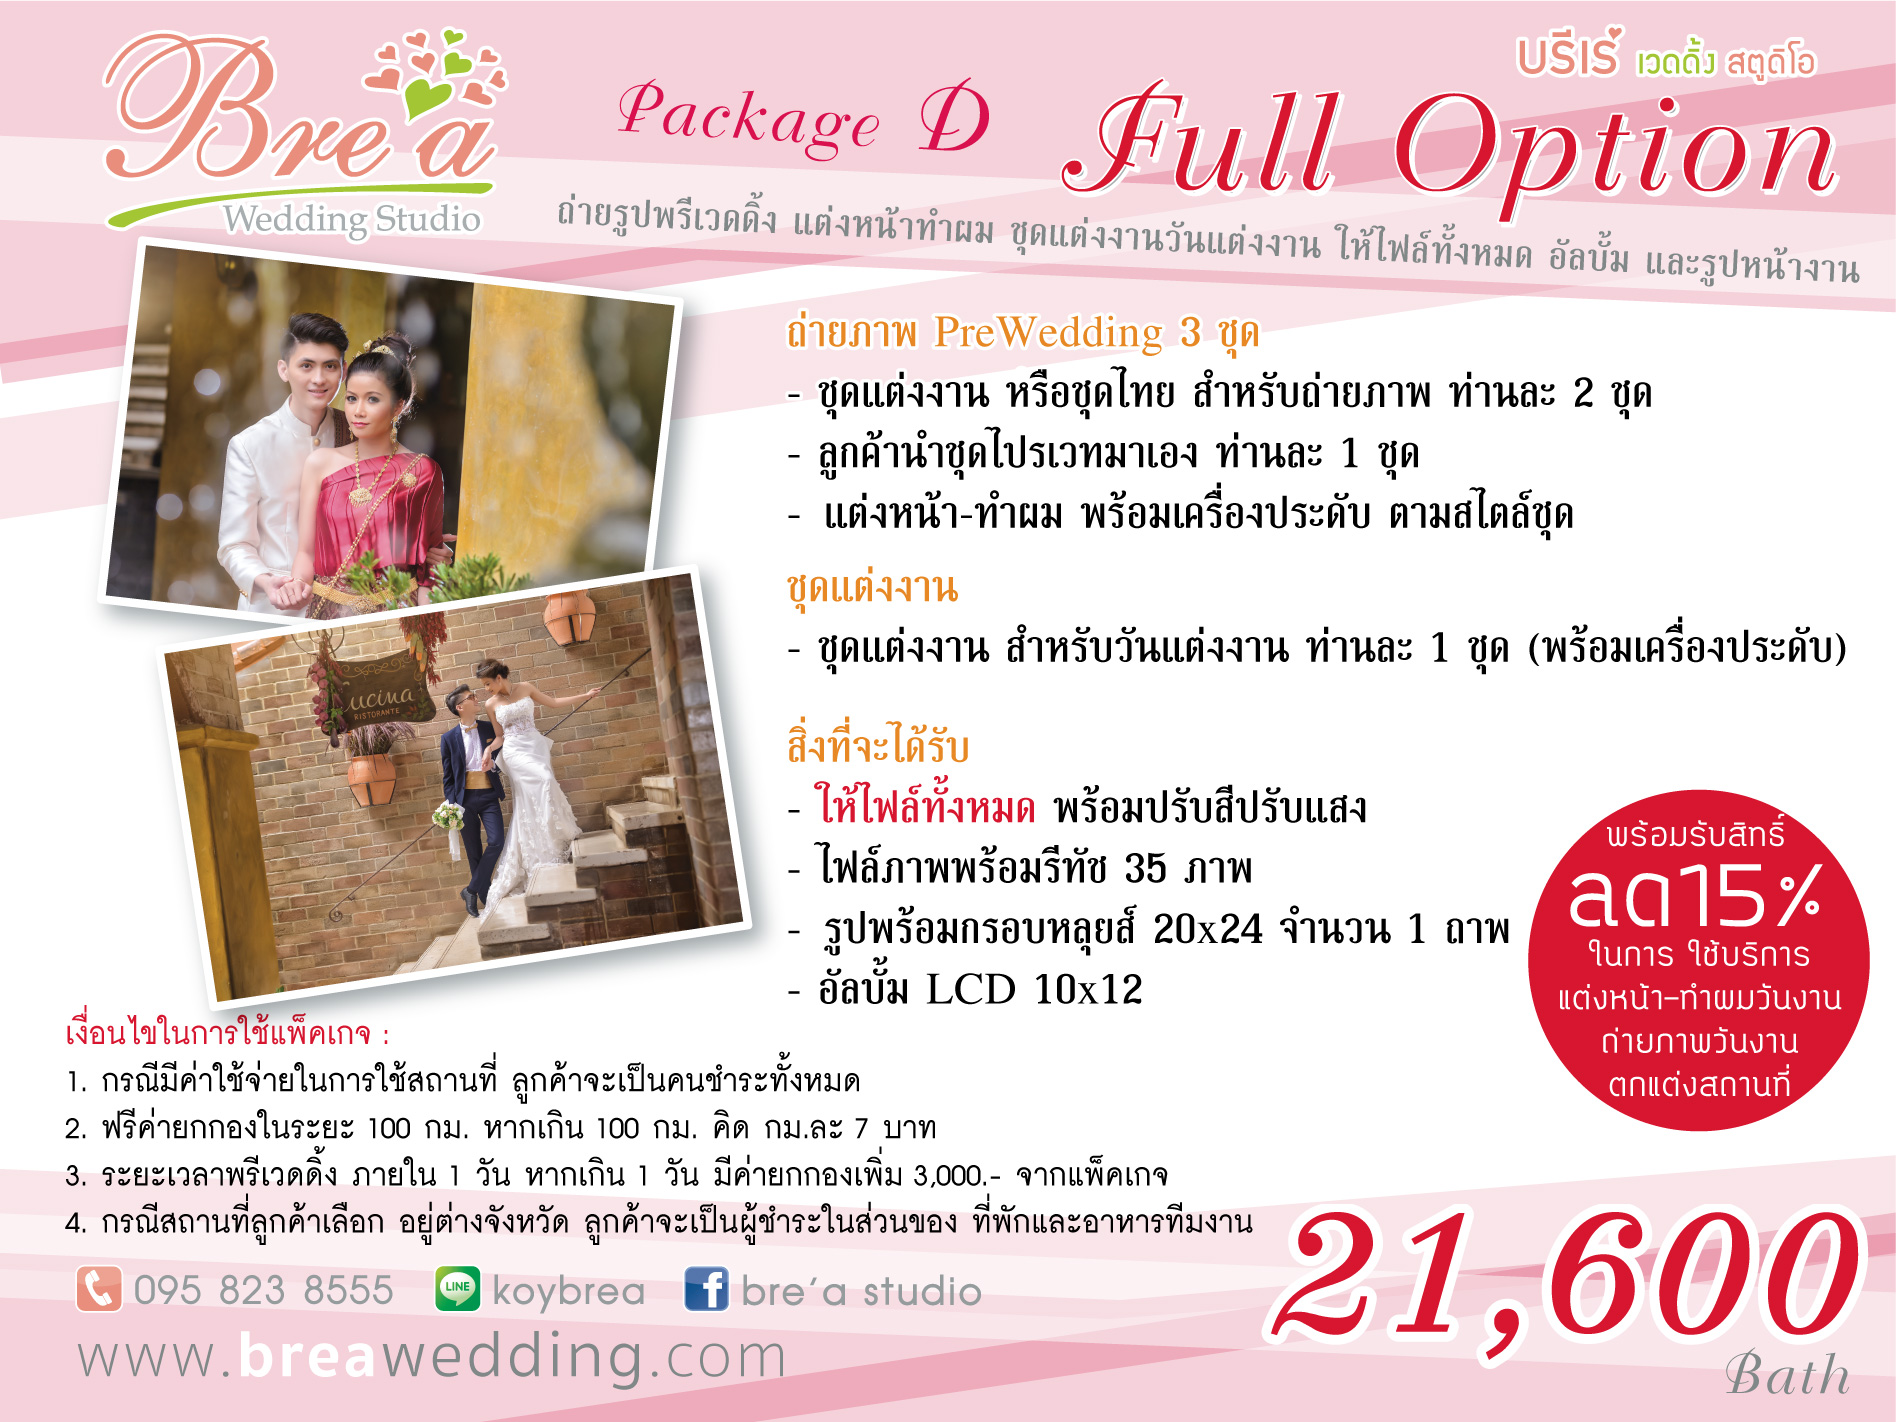 ราคาแพ็คเกจ ถ่ายรูปแต่งงาน พรีเวดดิ้ง Prewedding นนทบุรี 